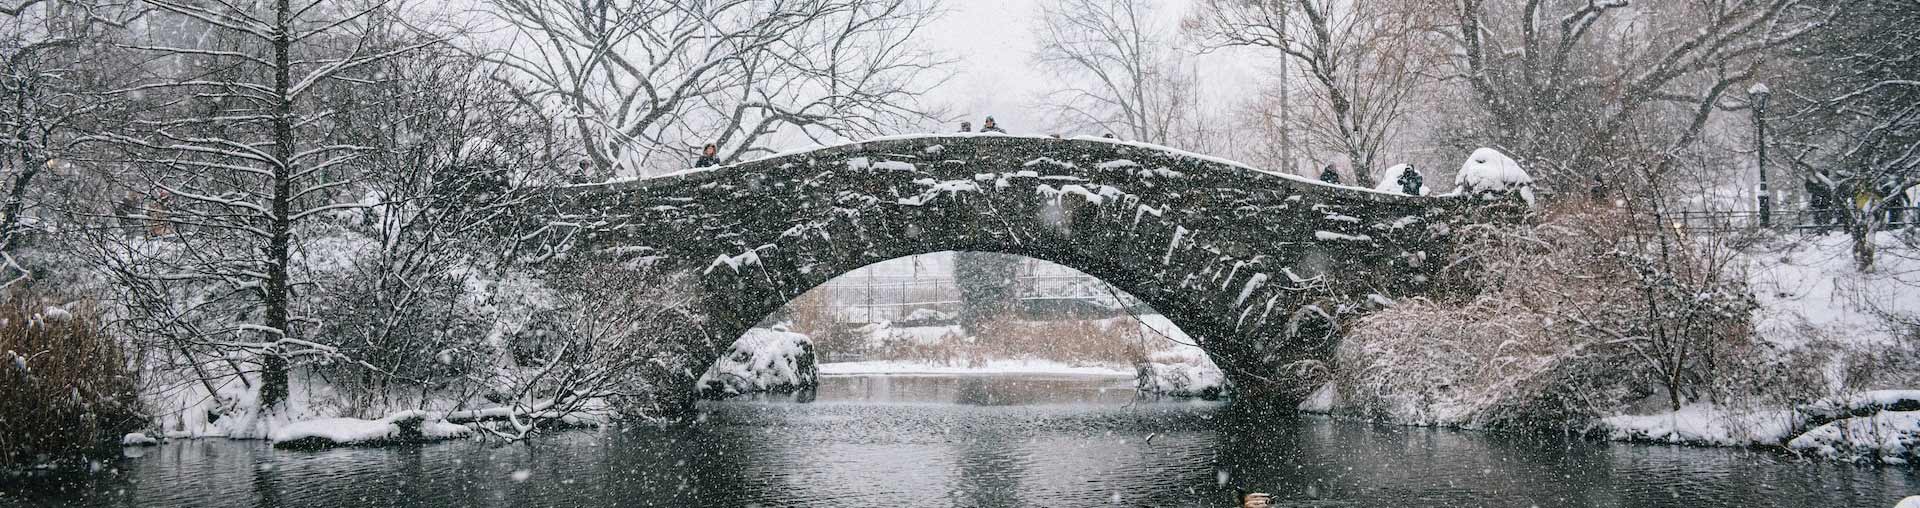 Central Park New York City verschneit mit Steinbrücke im Hintergrund